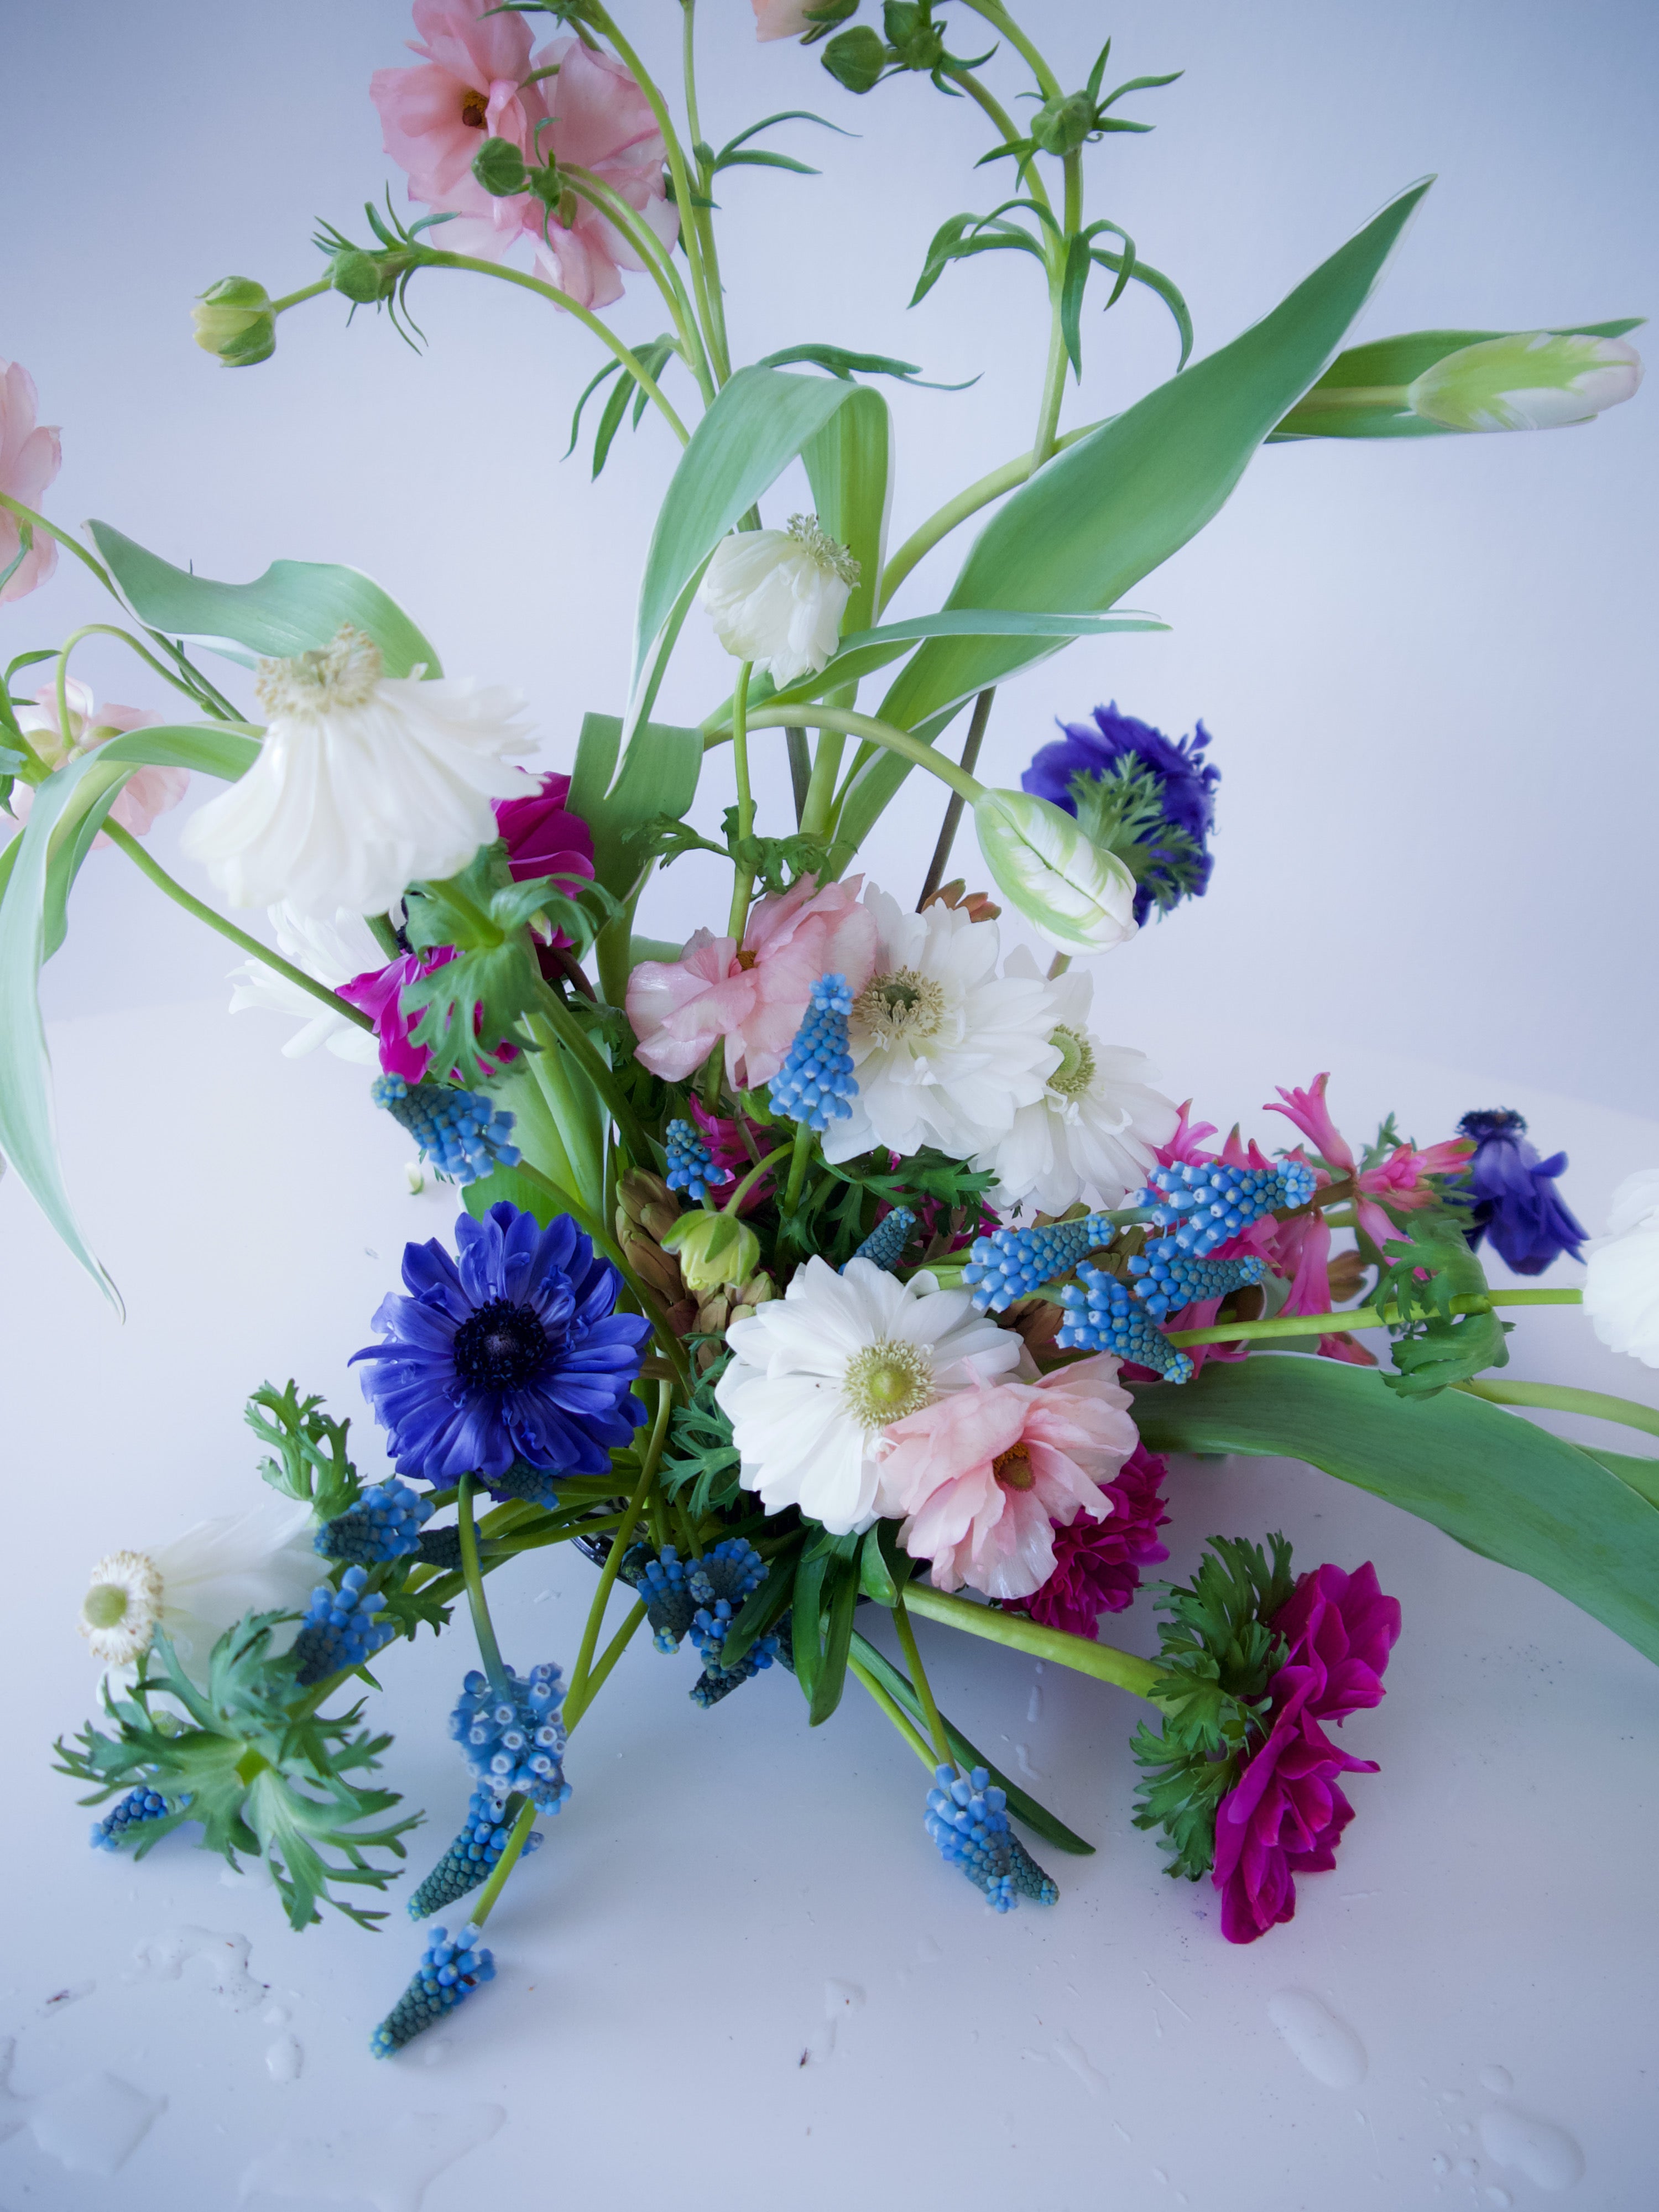 Ranunculus, anemones, hyacinth, tulips - seasonal flowers. Portland flower delivery.